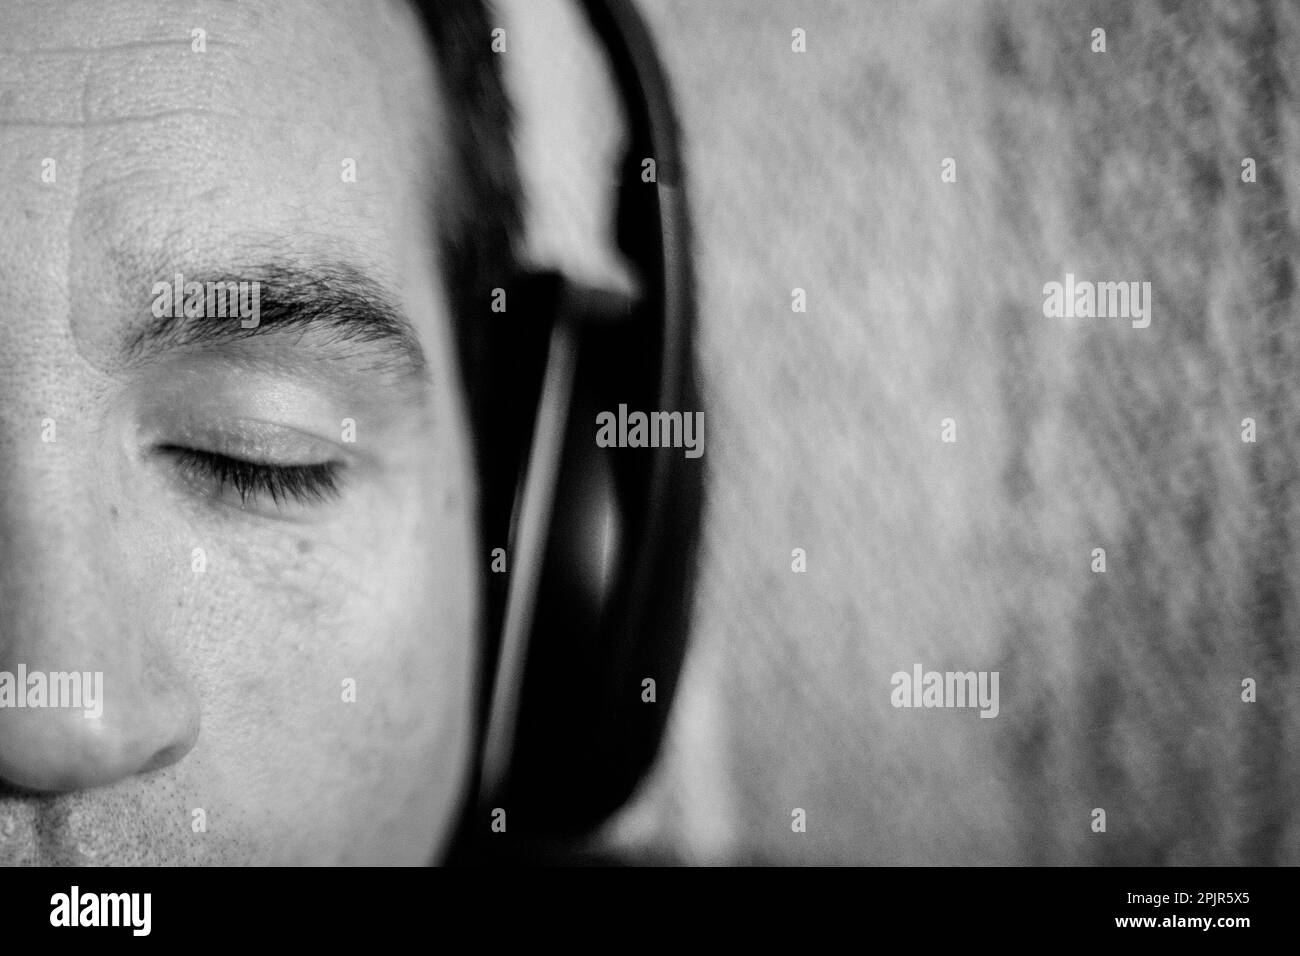 Un gros plan du visage d'un homme avec ses yeux fermés. L'homme écoute de la musique à l'aide d'un casque. Banque D'Images